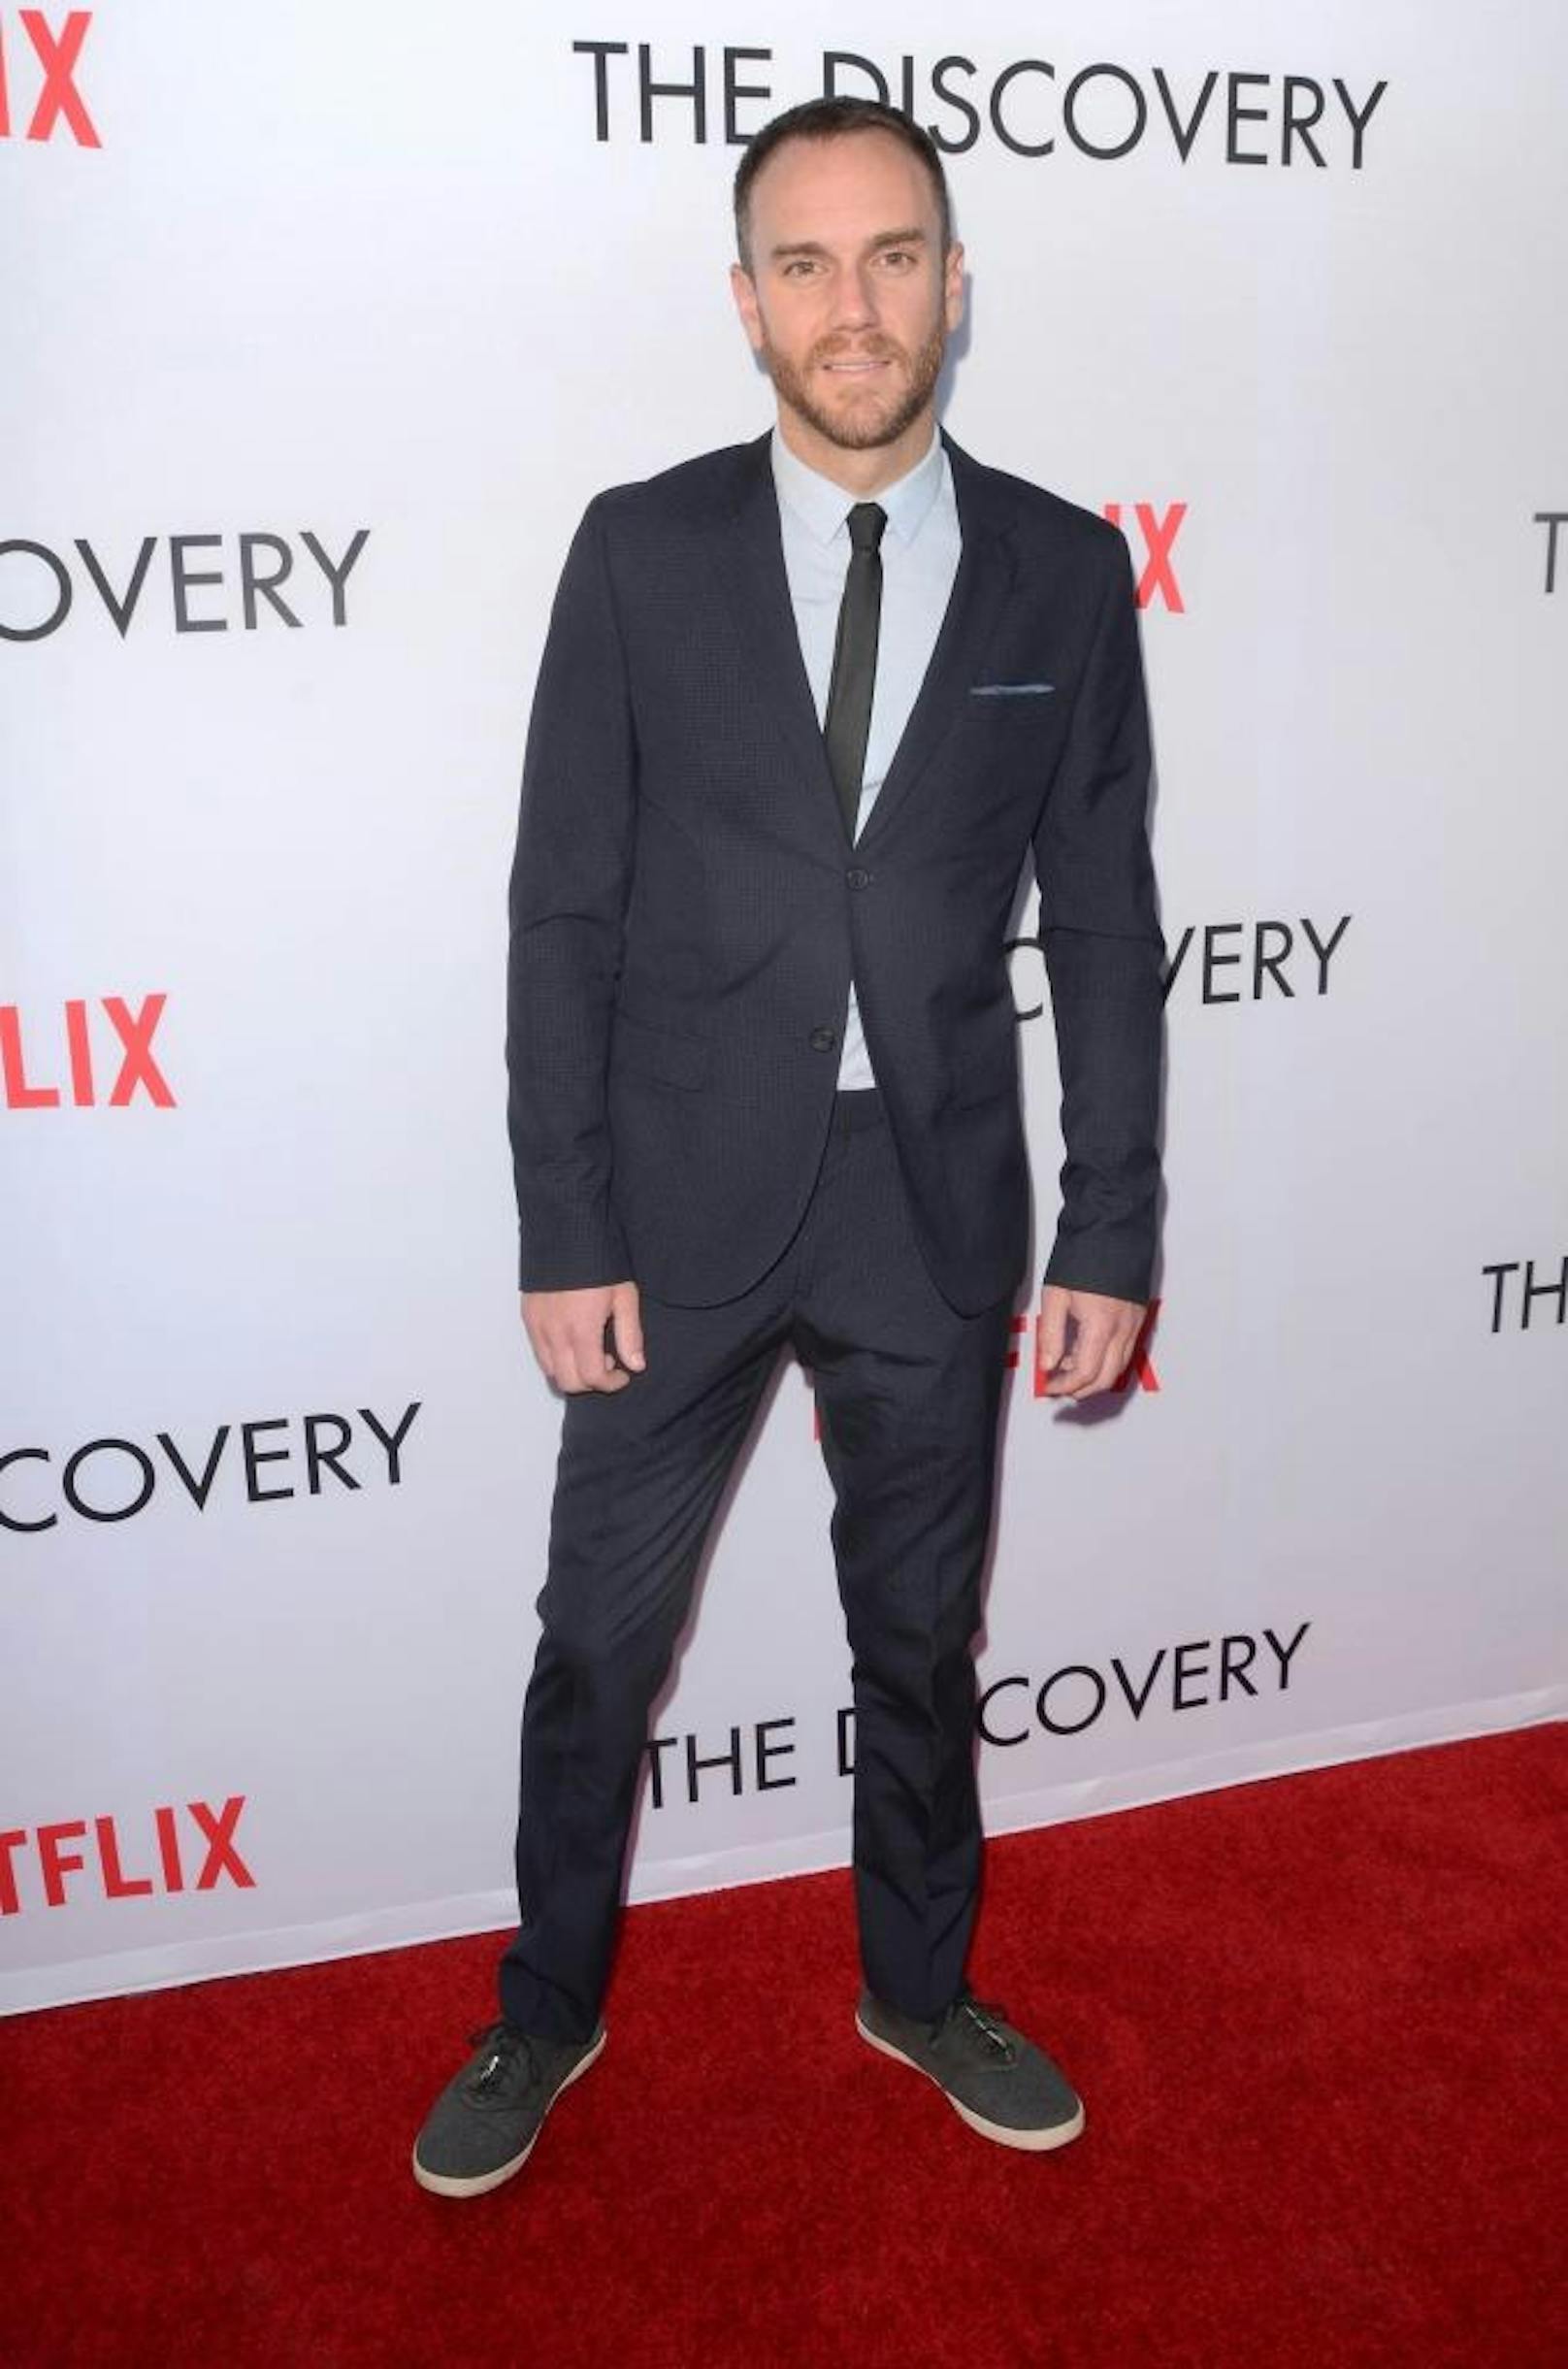 Charlie McDowell am 29. März 2017 bei der Premiere von Netflix' "The Discovery" in Los Angeles 